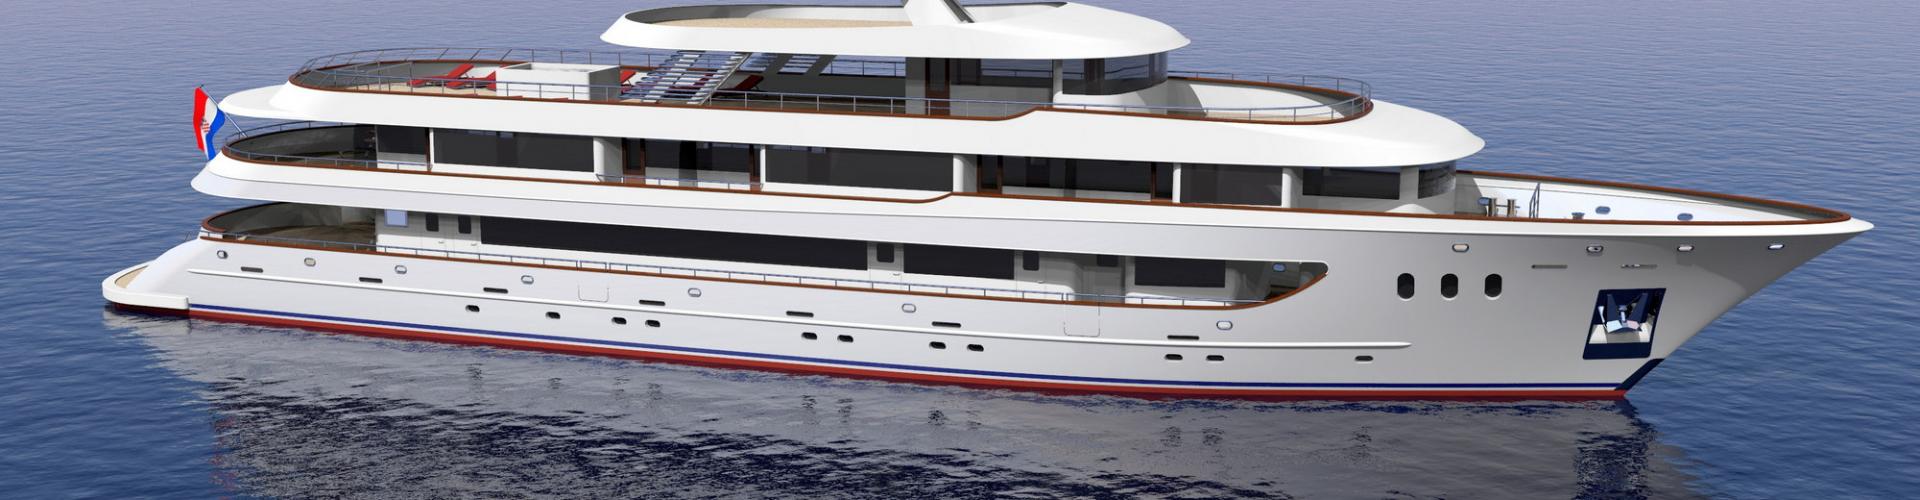 Deluxe navire de croisière MV Rhapsody- yacht à moteur